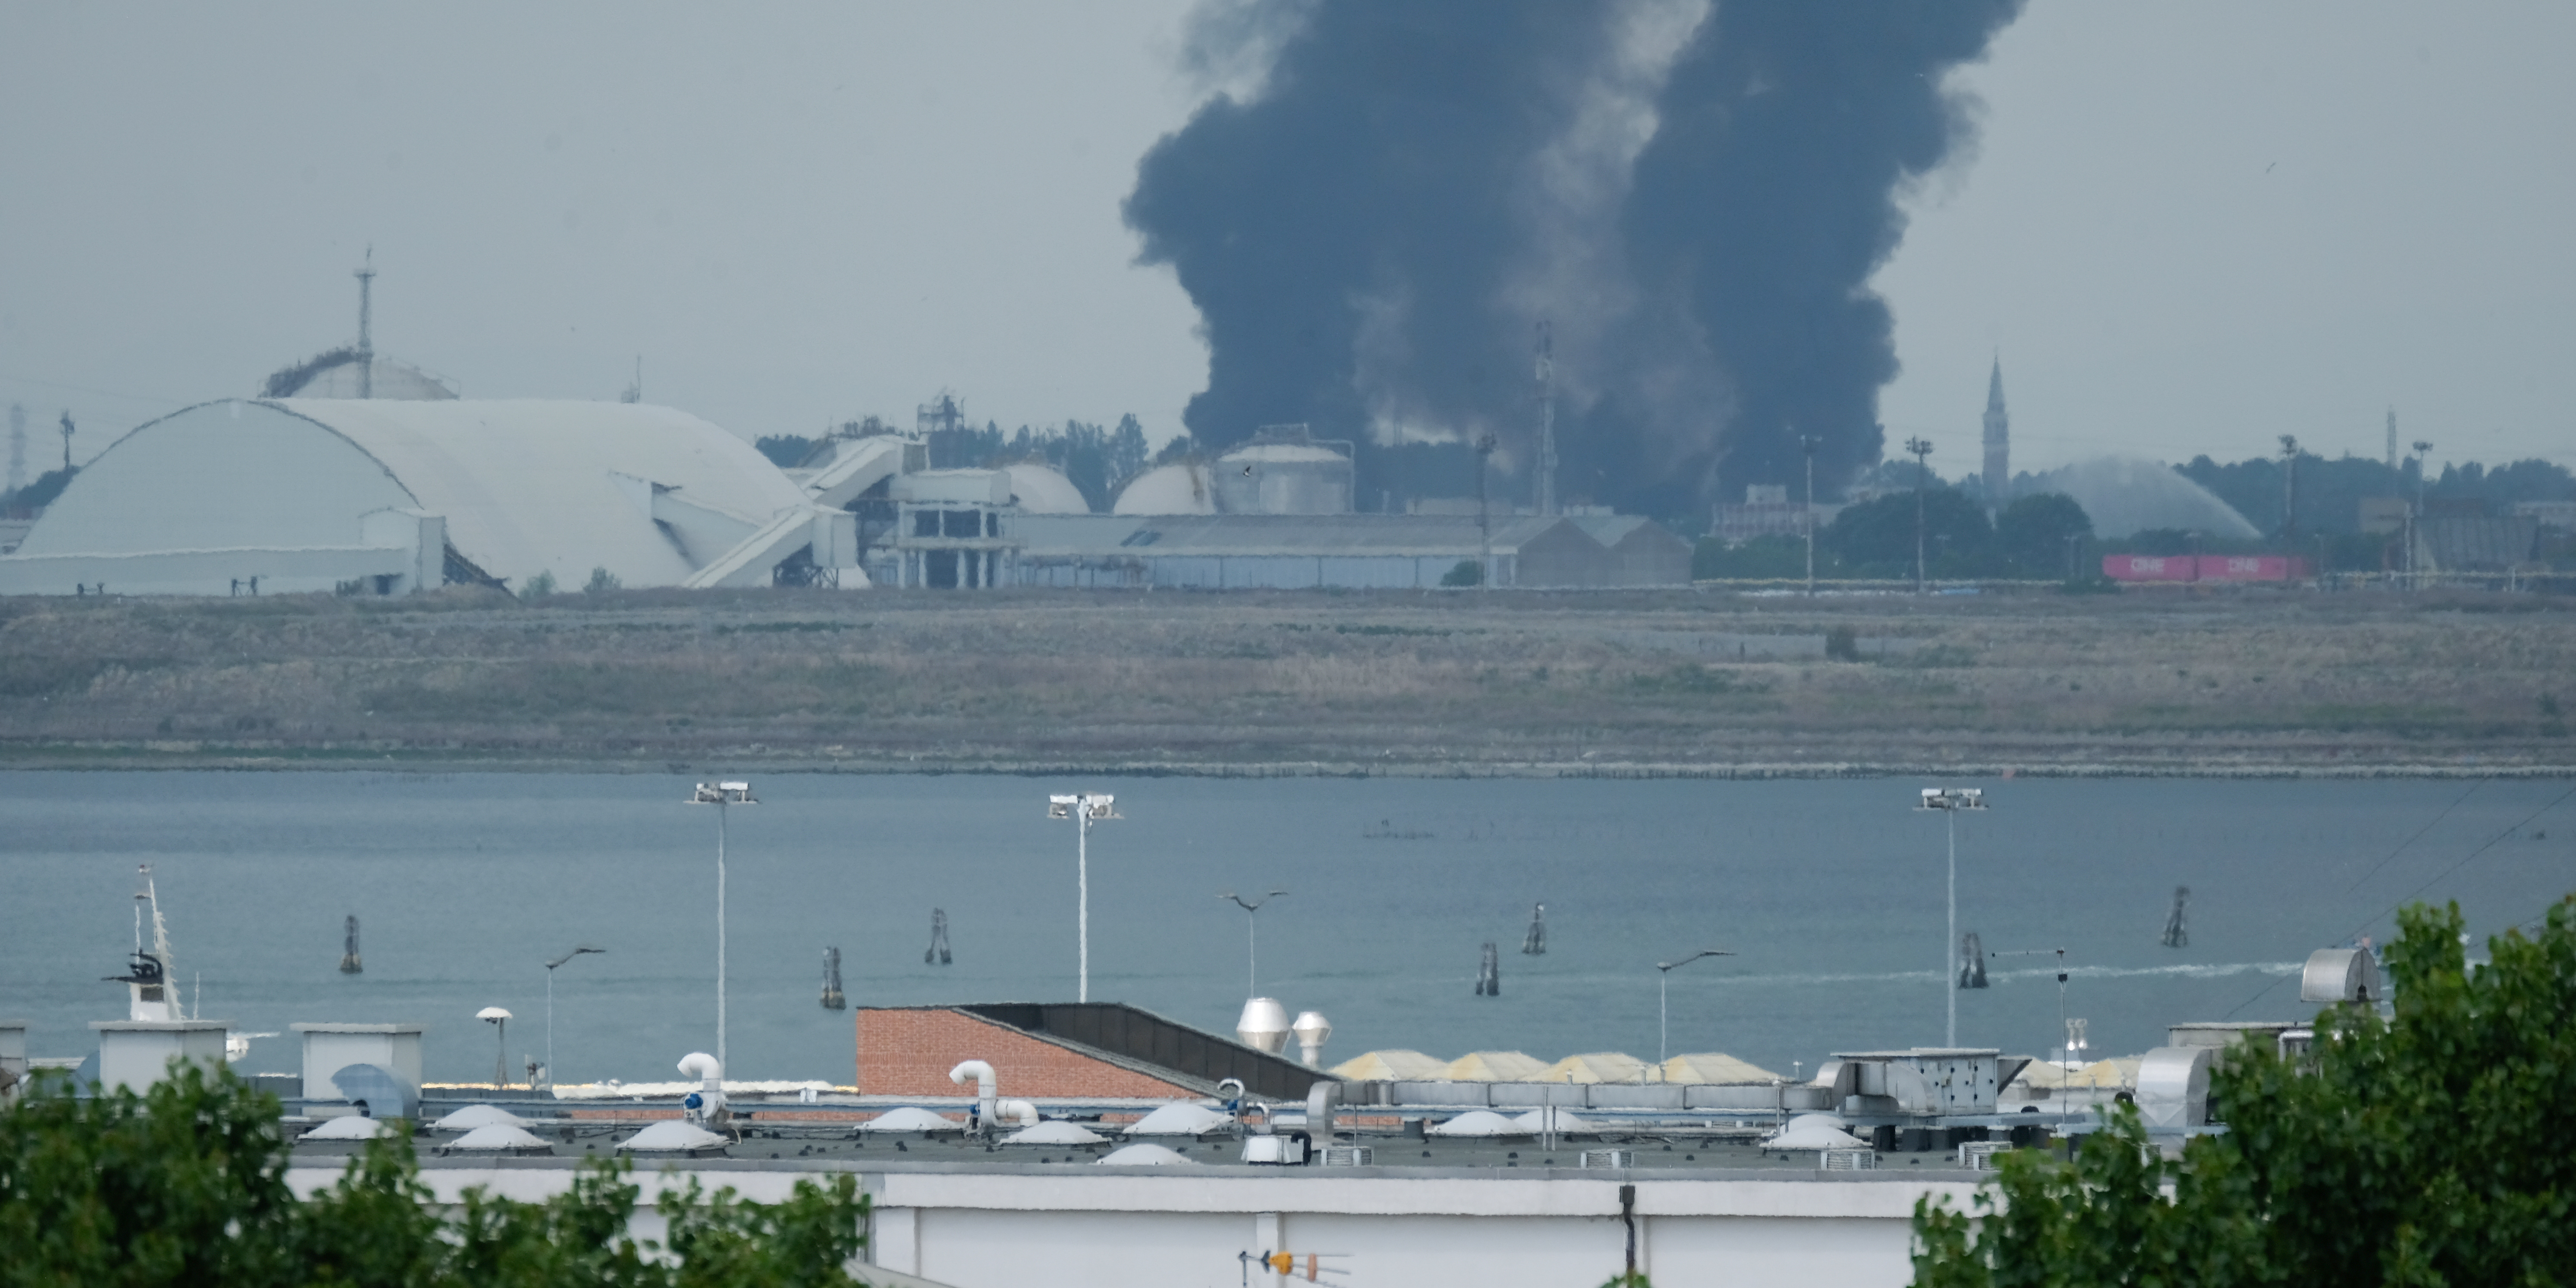 Incendie dans une usine chimique à côté de Venise: les Vénitiens à nouveau confinés à cause des fumées toxiques